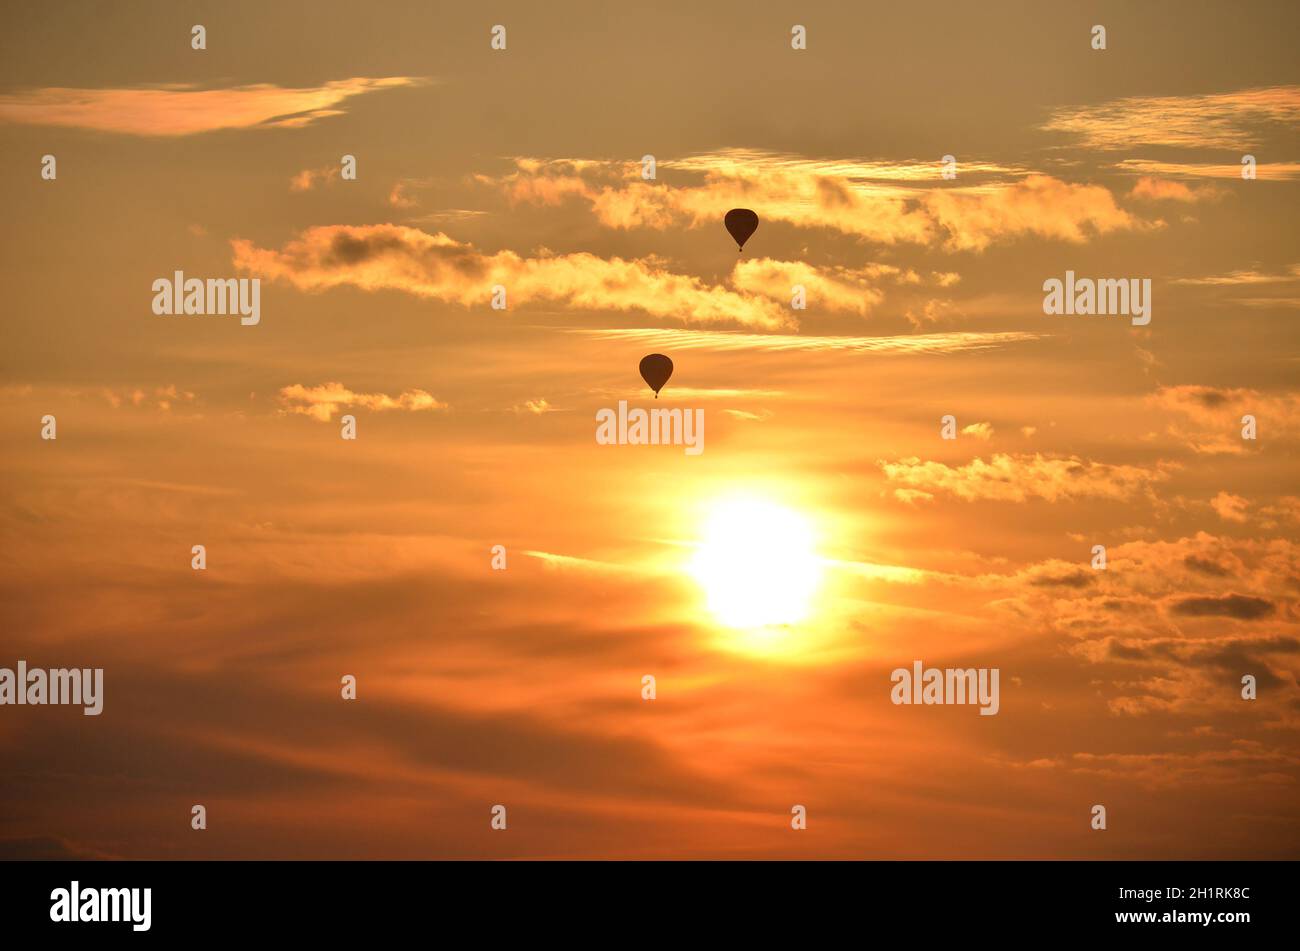 Ballons mit einem Sonnenaufgang im Salzkammergut, Österreich, Europa - Balloons with a sunrise in the Salzkammergut, Austria, Europe Stock Photo